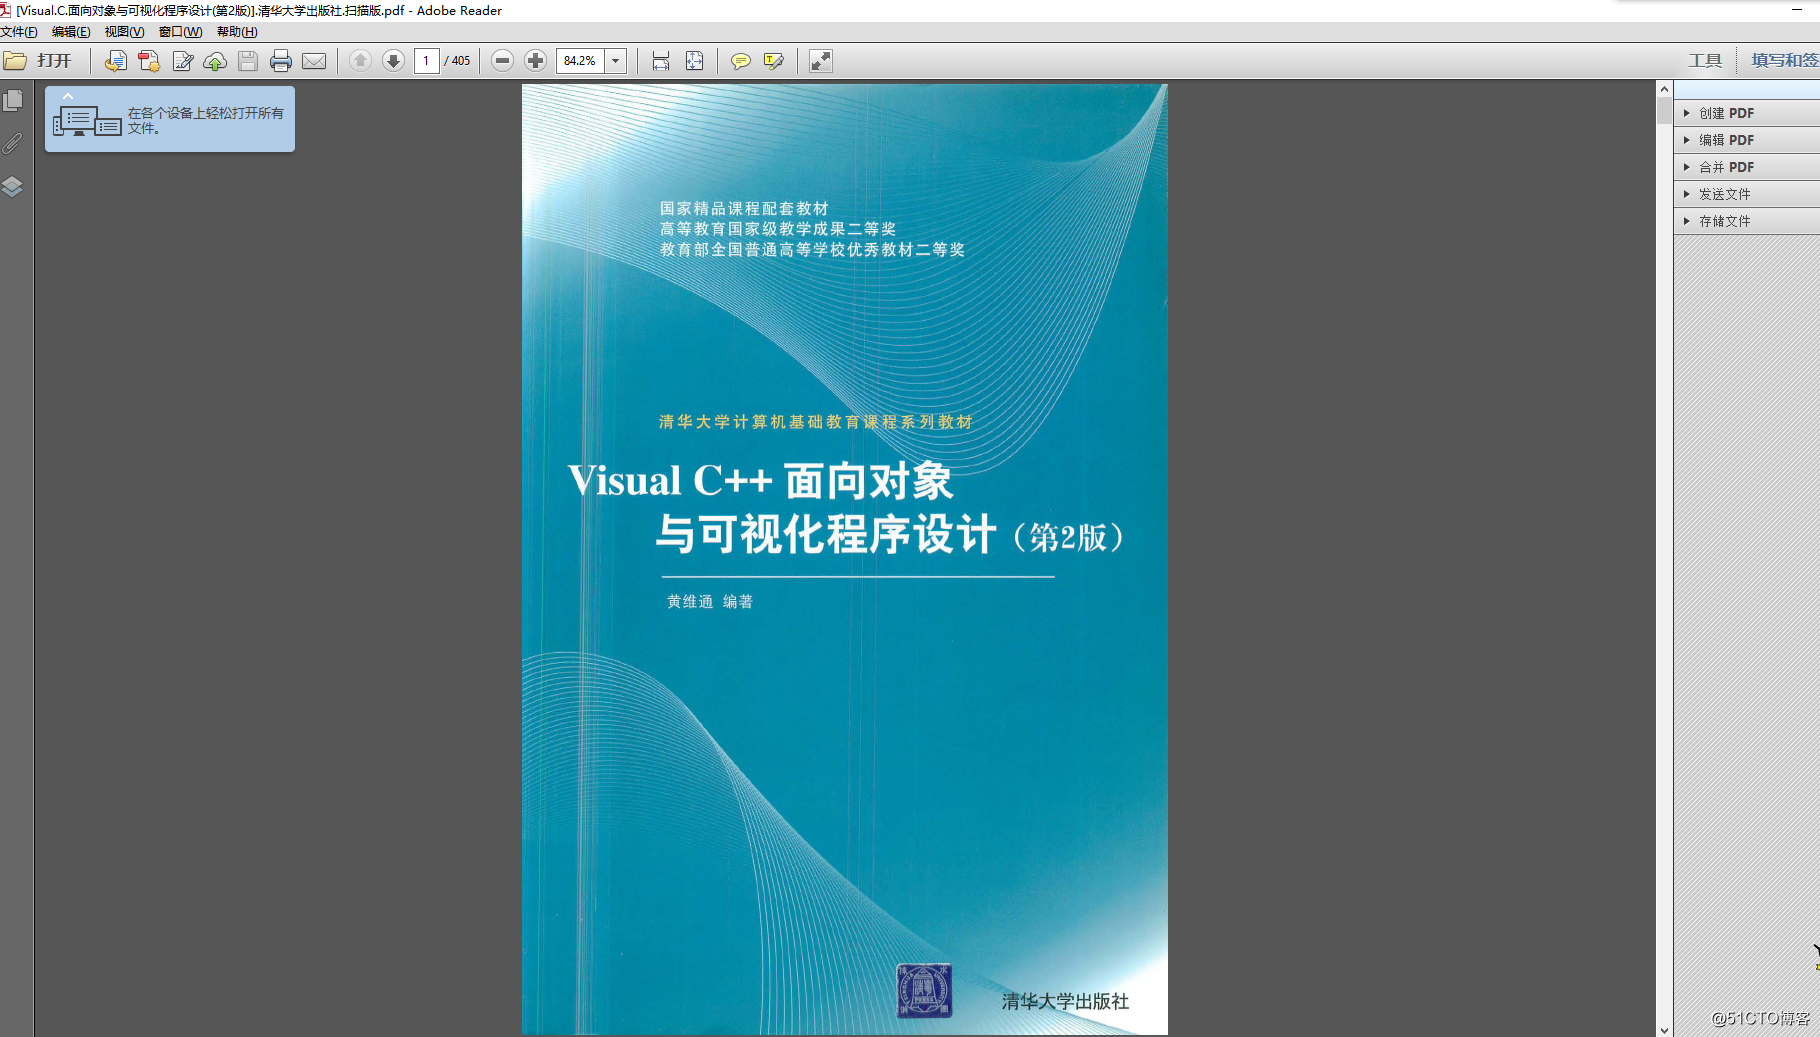 Visual.C.面向對象與可視化程序設計(第2版).清華大學出版社.掃描版